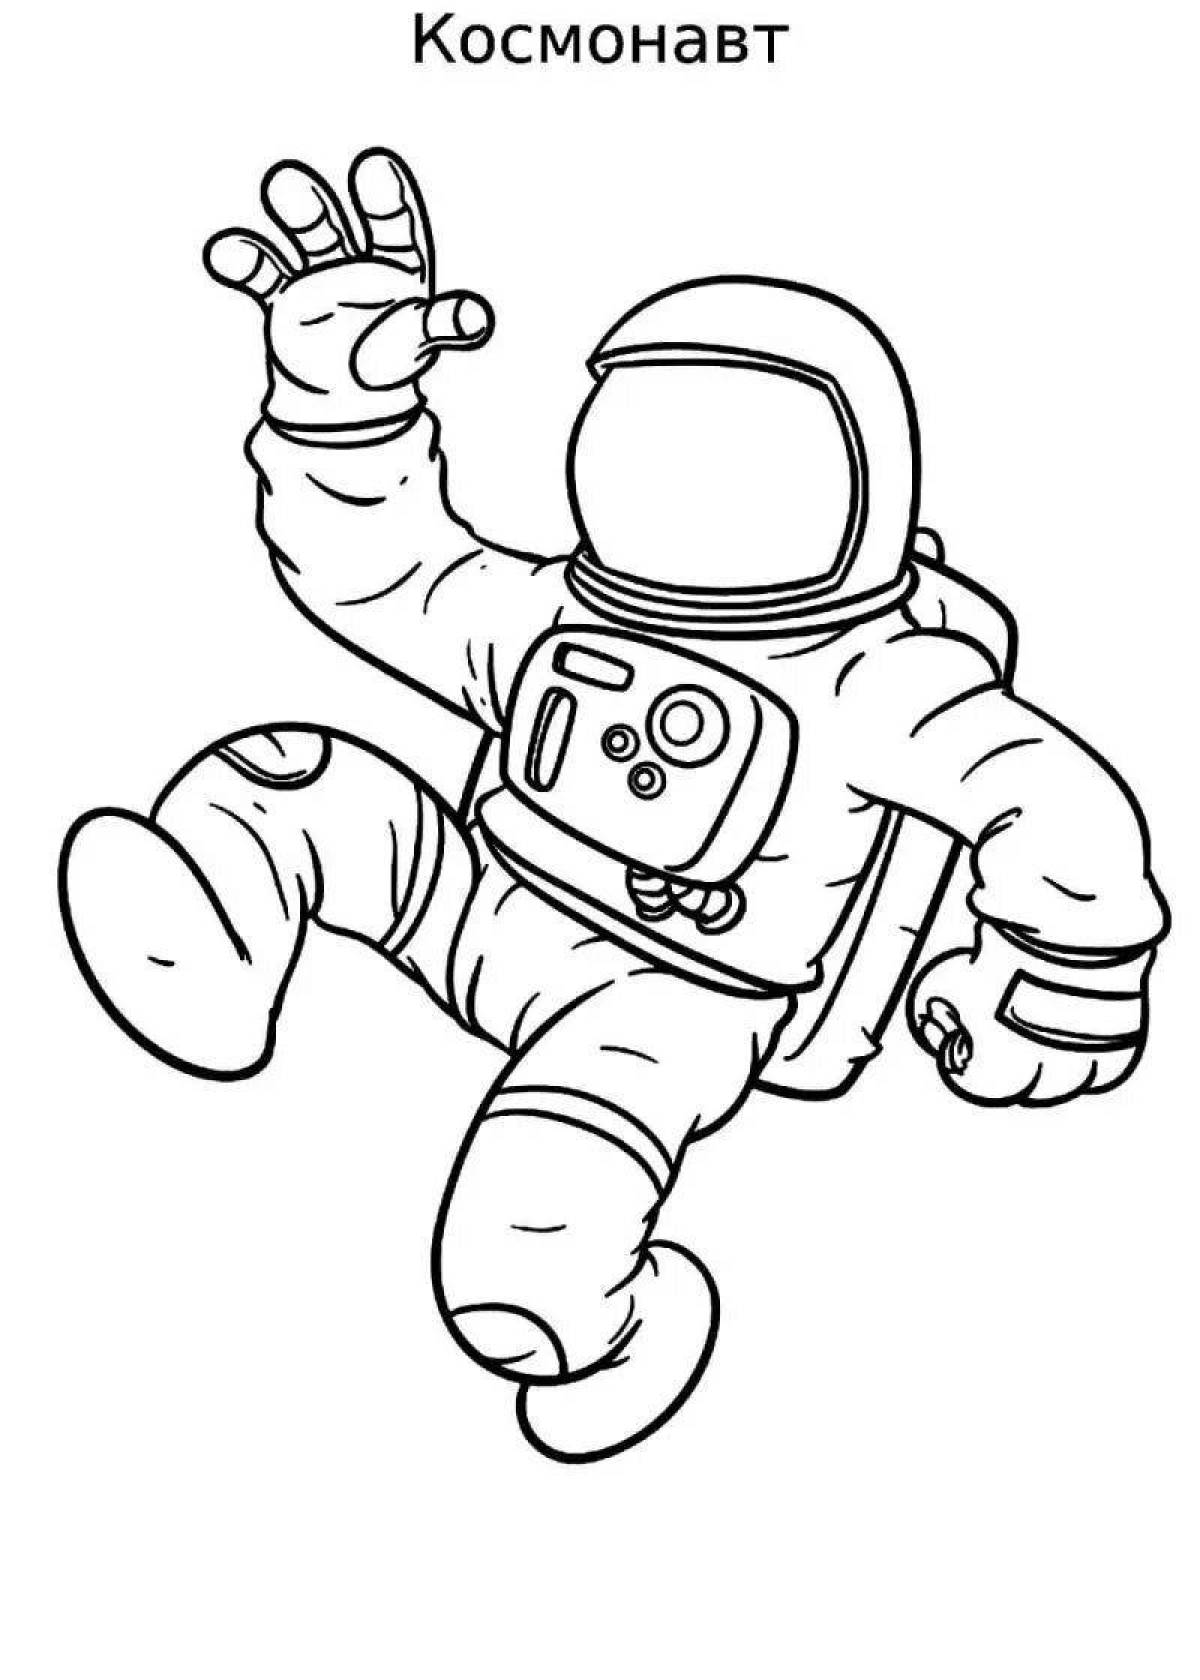 Распечатать космонавта для поделки. Раскраска космонавт в скафандре. Космонавт раскраска. Космонавт раскраска для детей. Космонавт рисунок для детей.